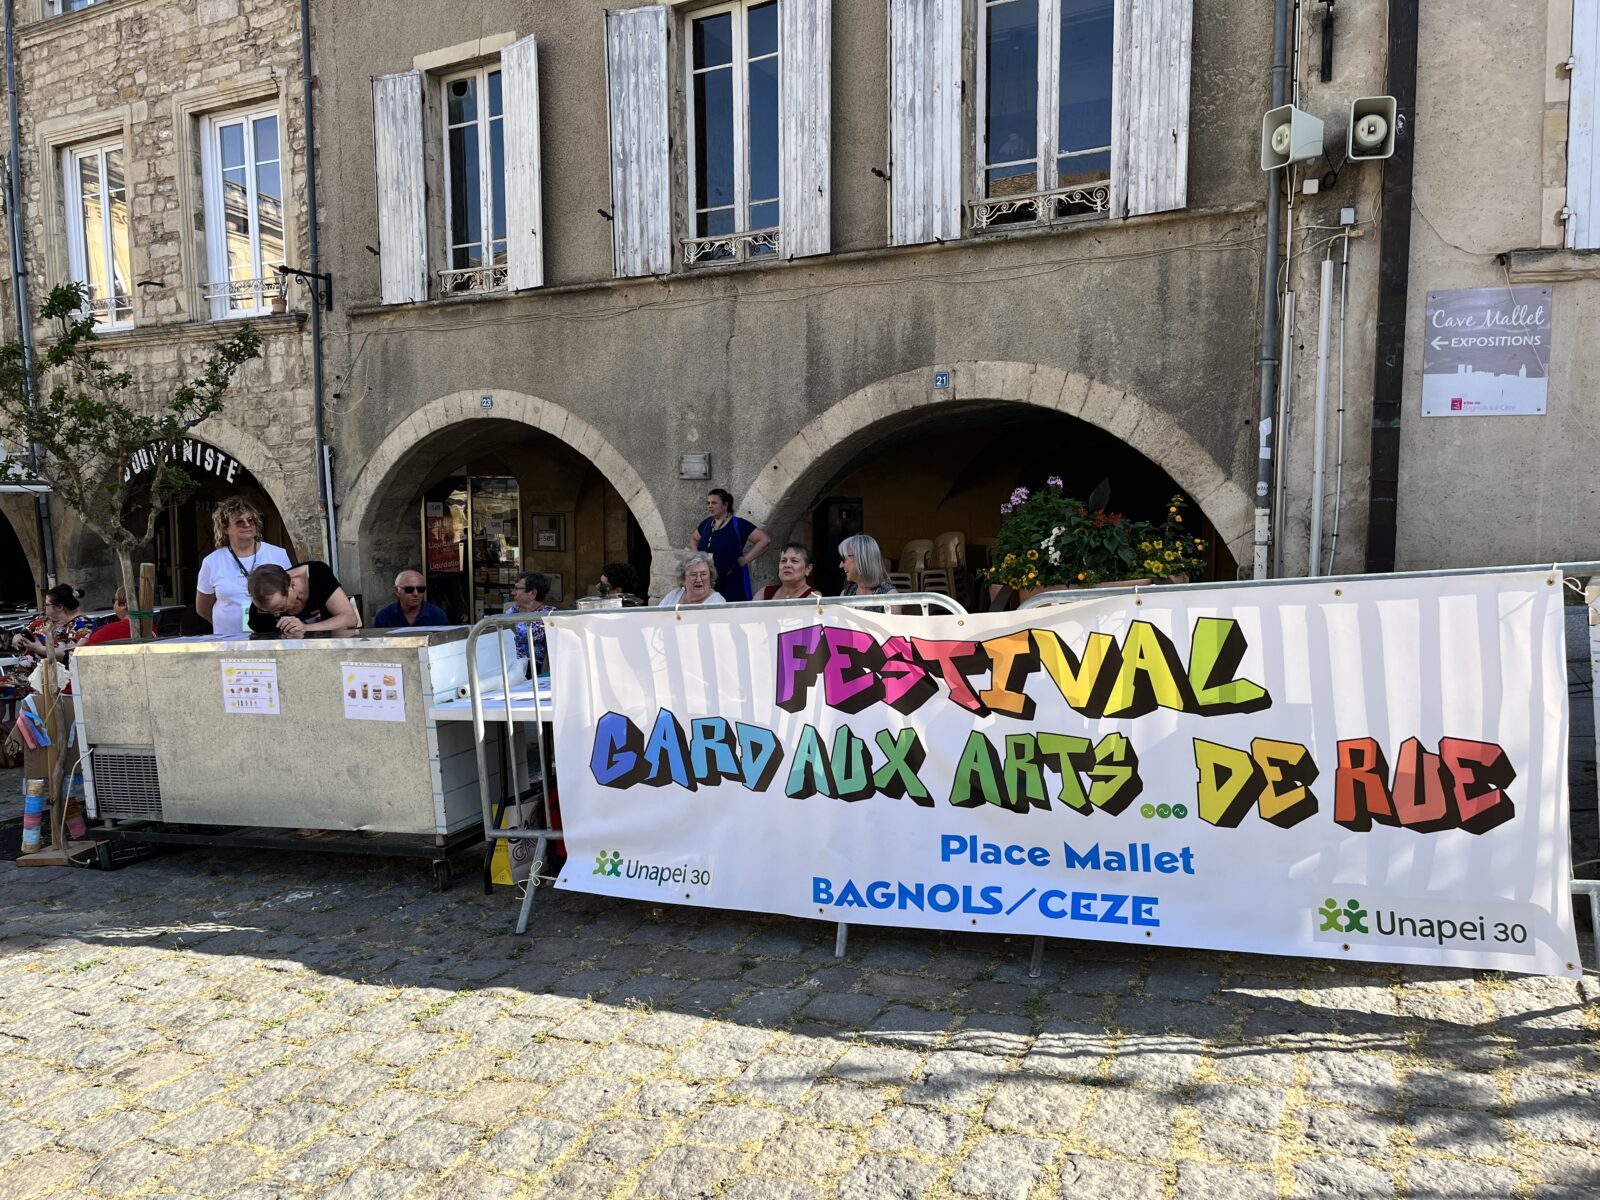 BAGNOLS/CEZE : Gard aux arts…de rue, c’est mardi 12 septembre, à la salle multiculturelle